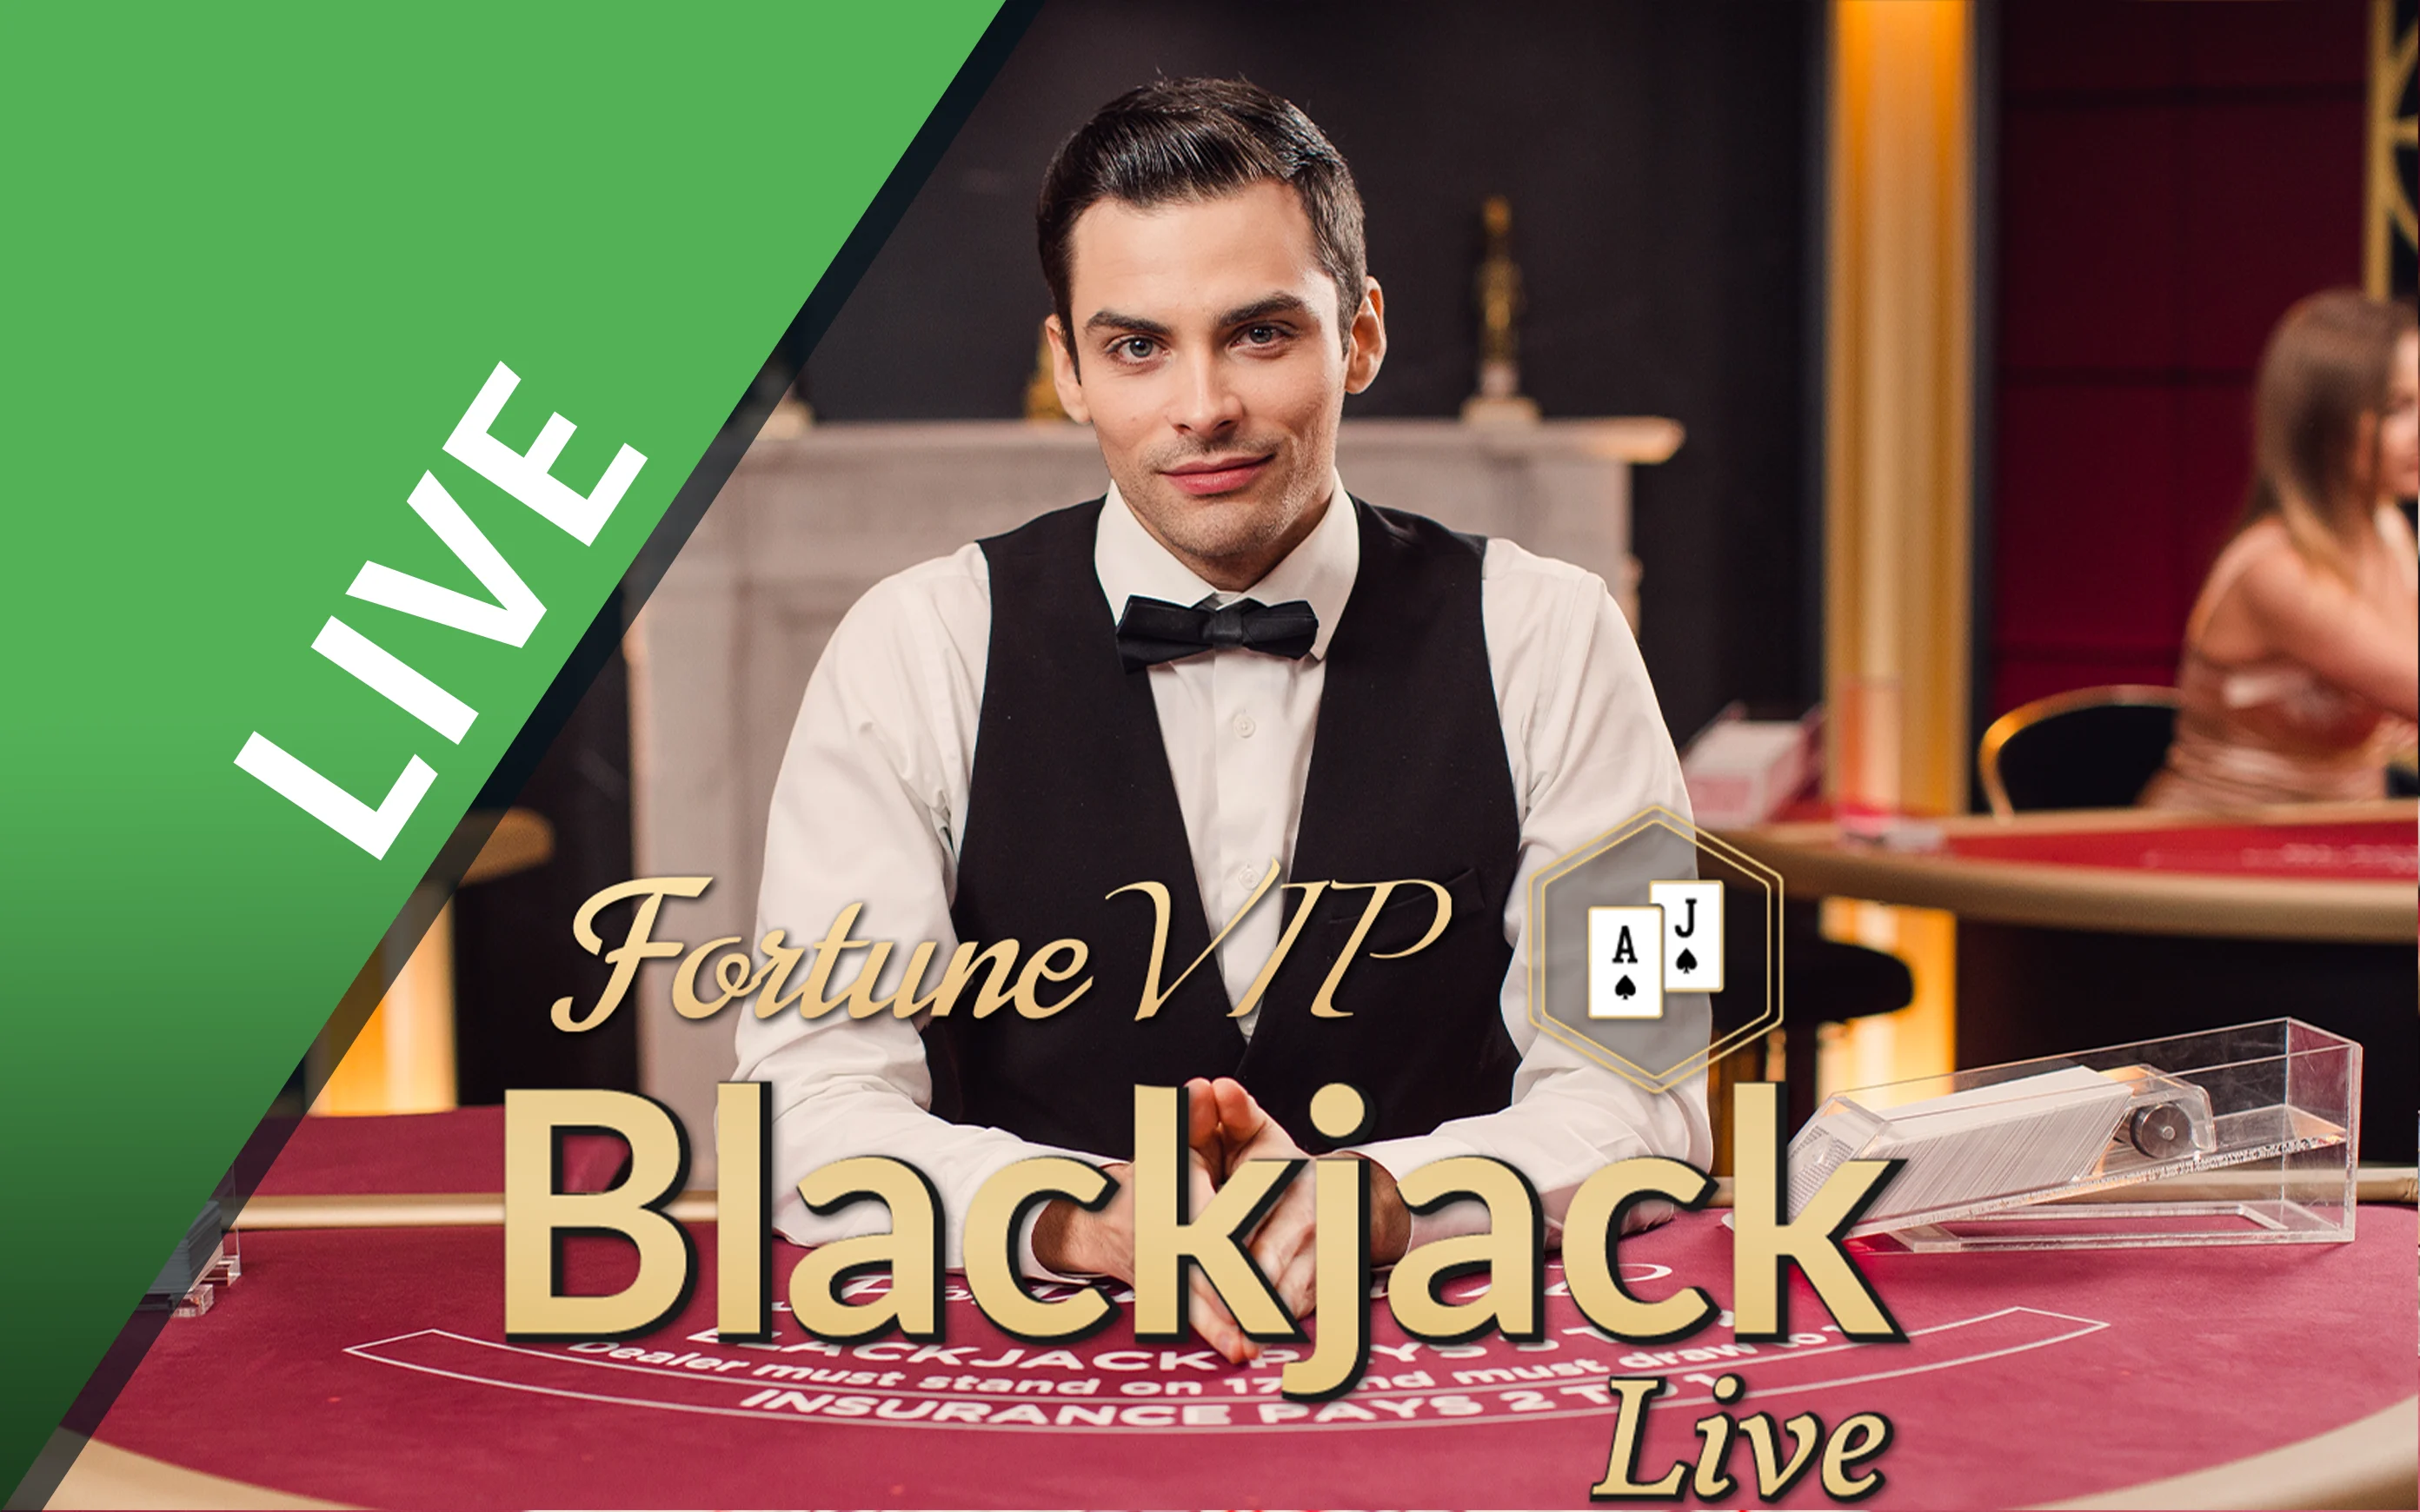 Play Blackjack Fortune VIP on Starcasino.be online casino